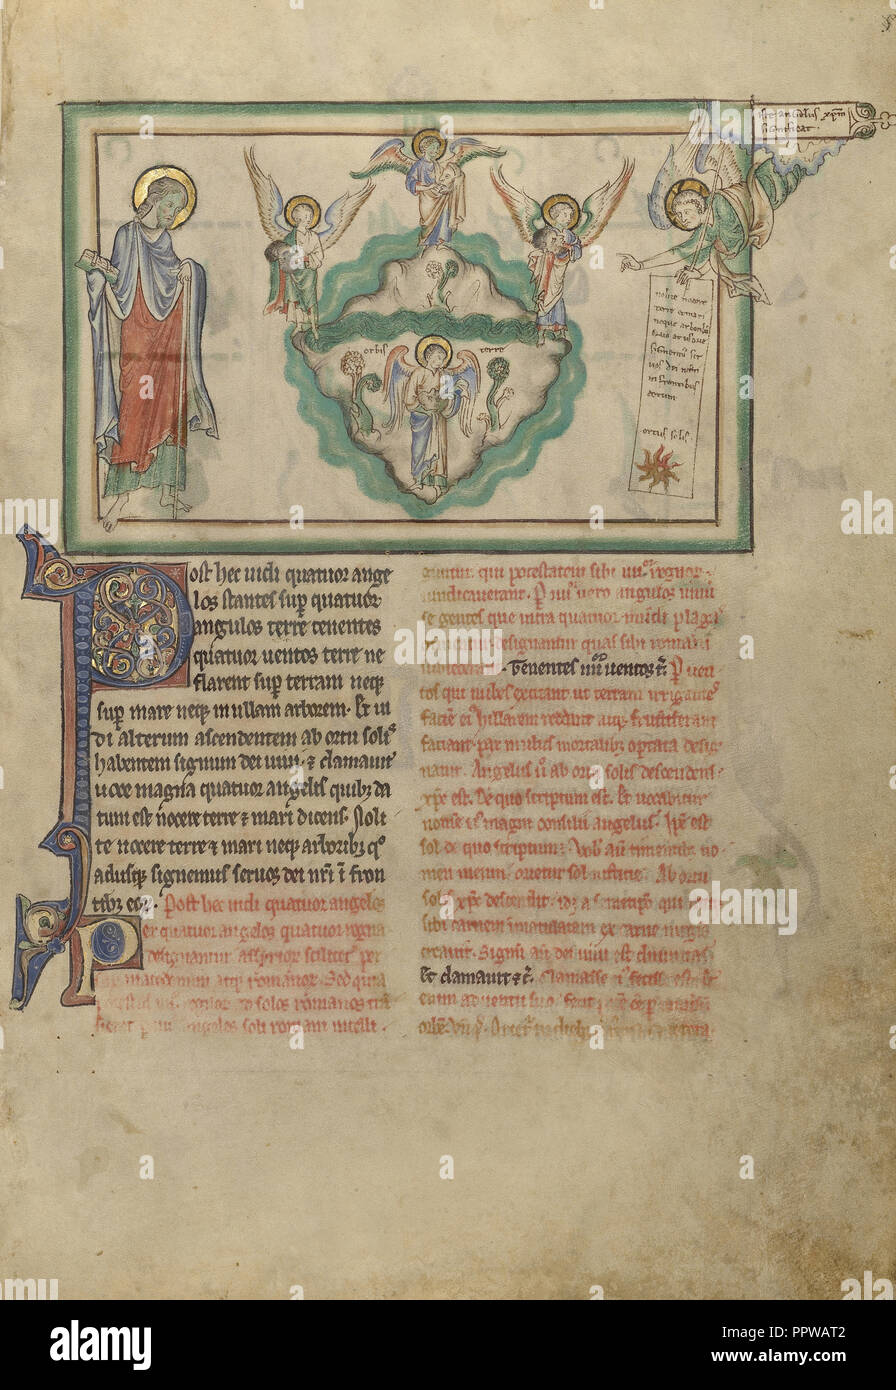 Engel, die hielten die vier Winde und ein Engel bedeutet Christus; London, England; etwa 1255 - 1260; Tempera Farben Stockfoto